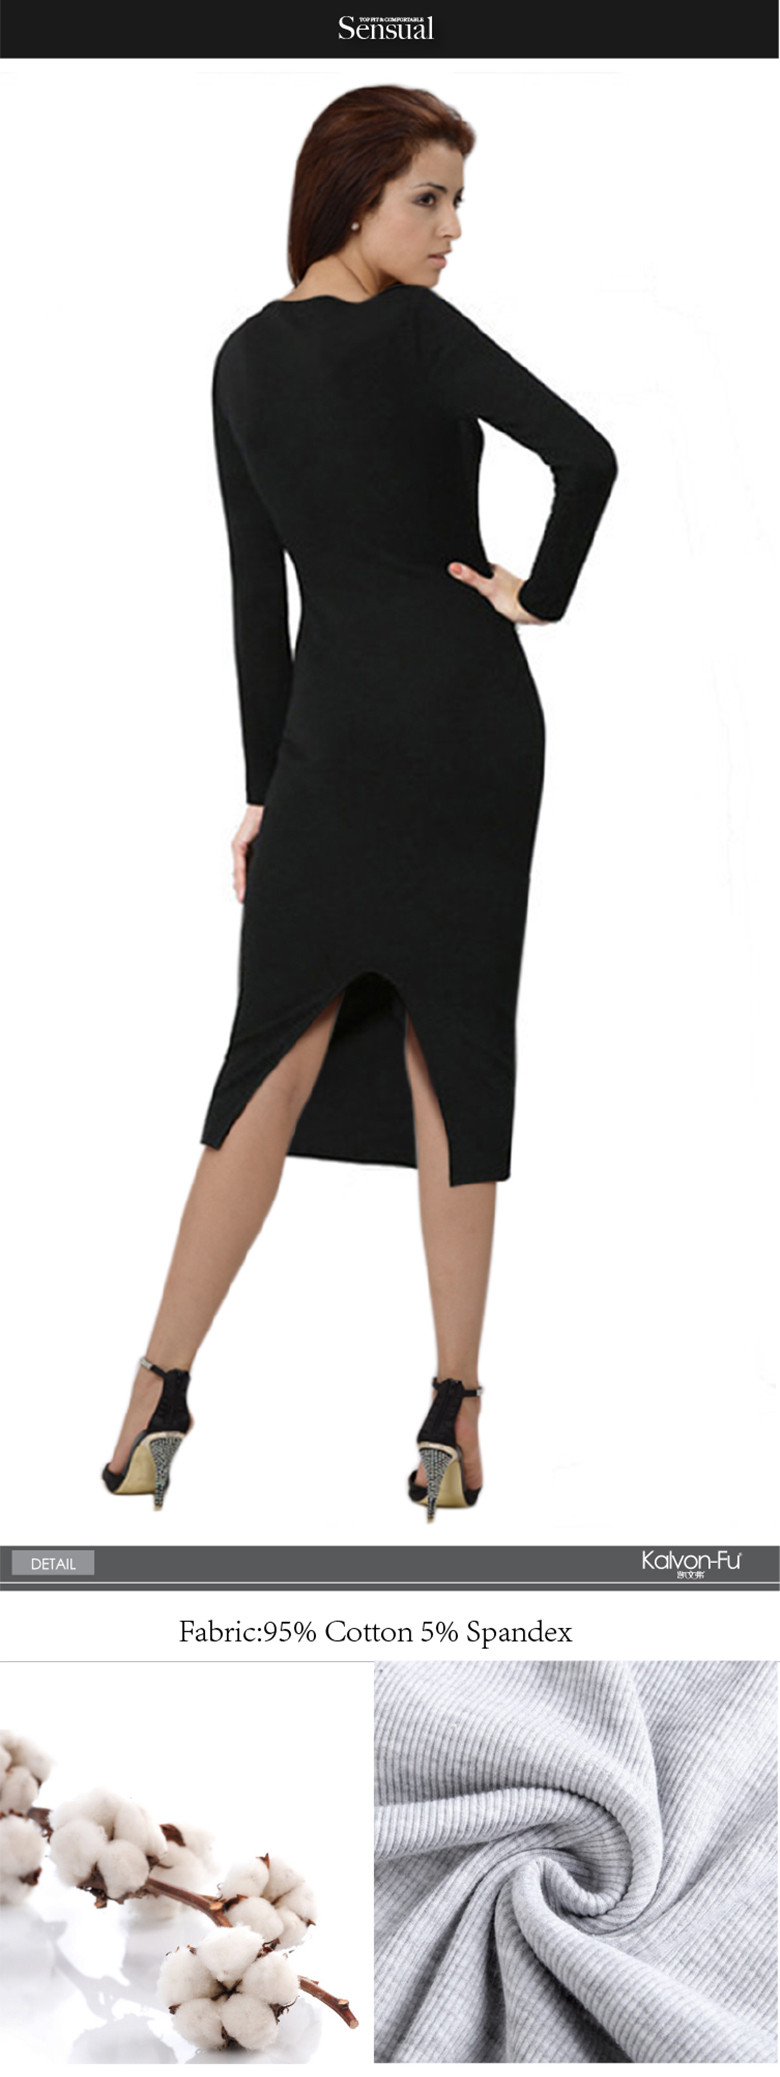 KVF-Design-Women-Long-Sleeve-Skinny-Dresses-Lady39s-Formal-Elegant-Modal-Dress-Plain-High-Street-Fas-32657383297